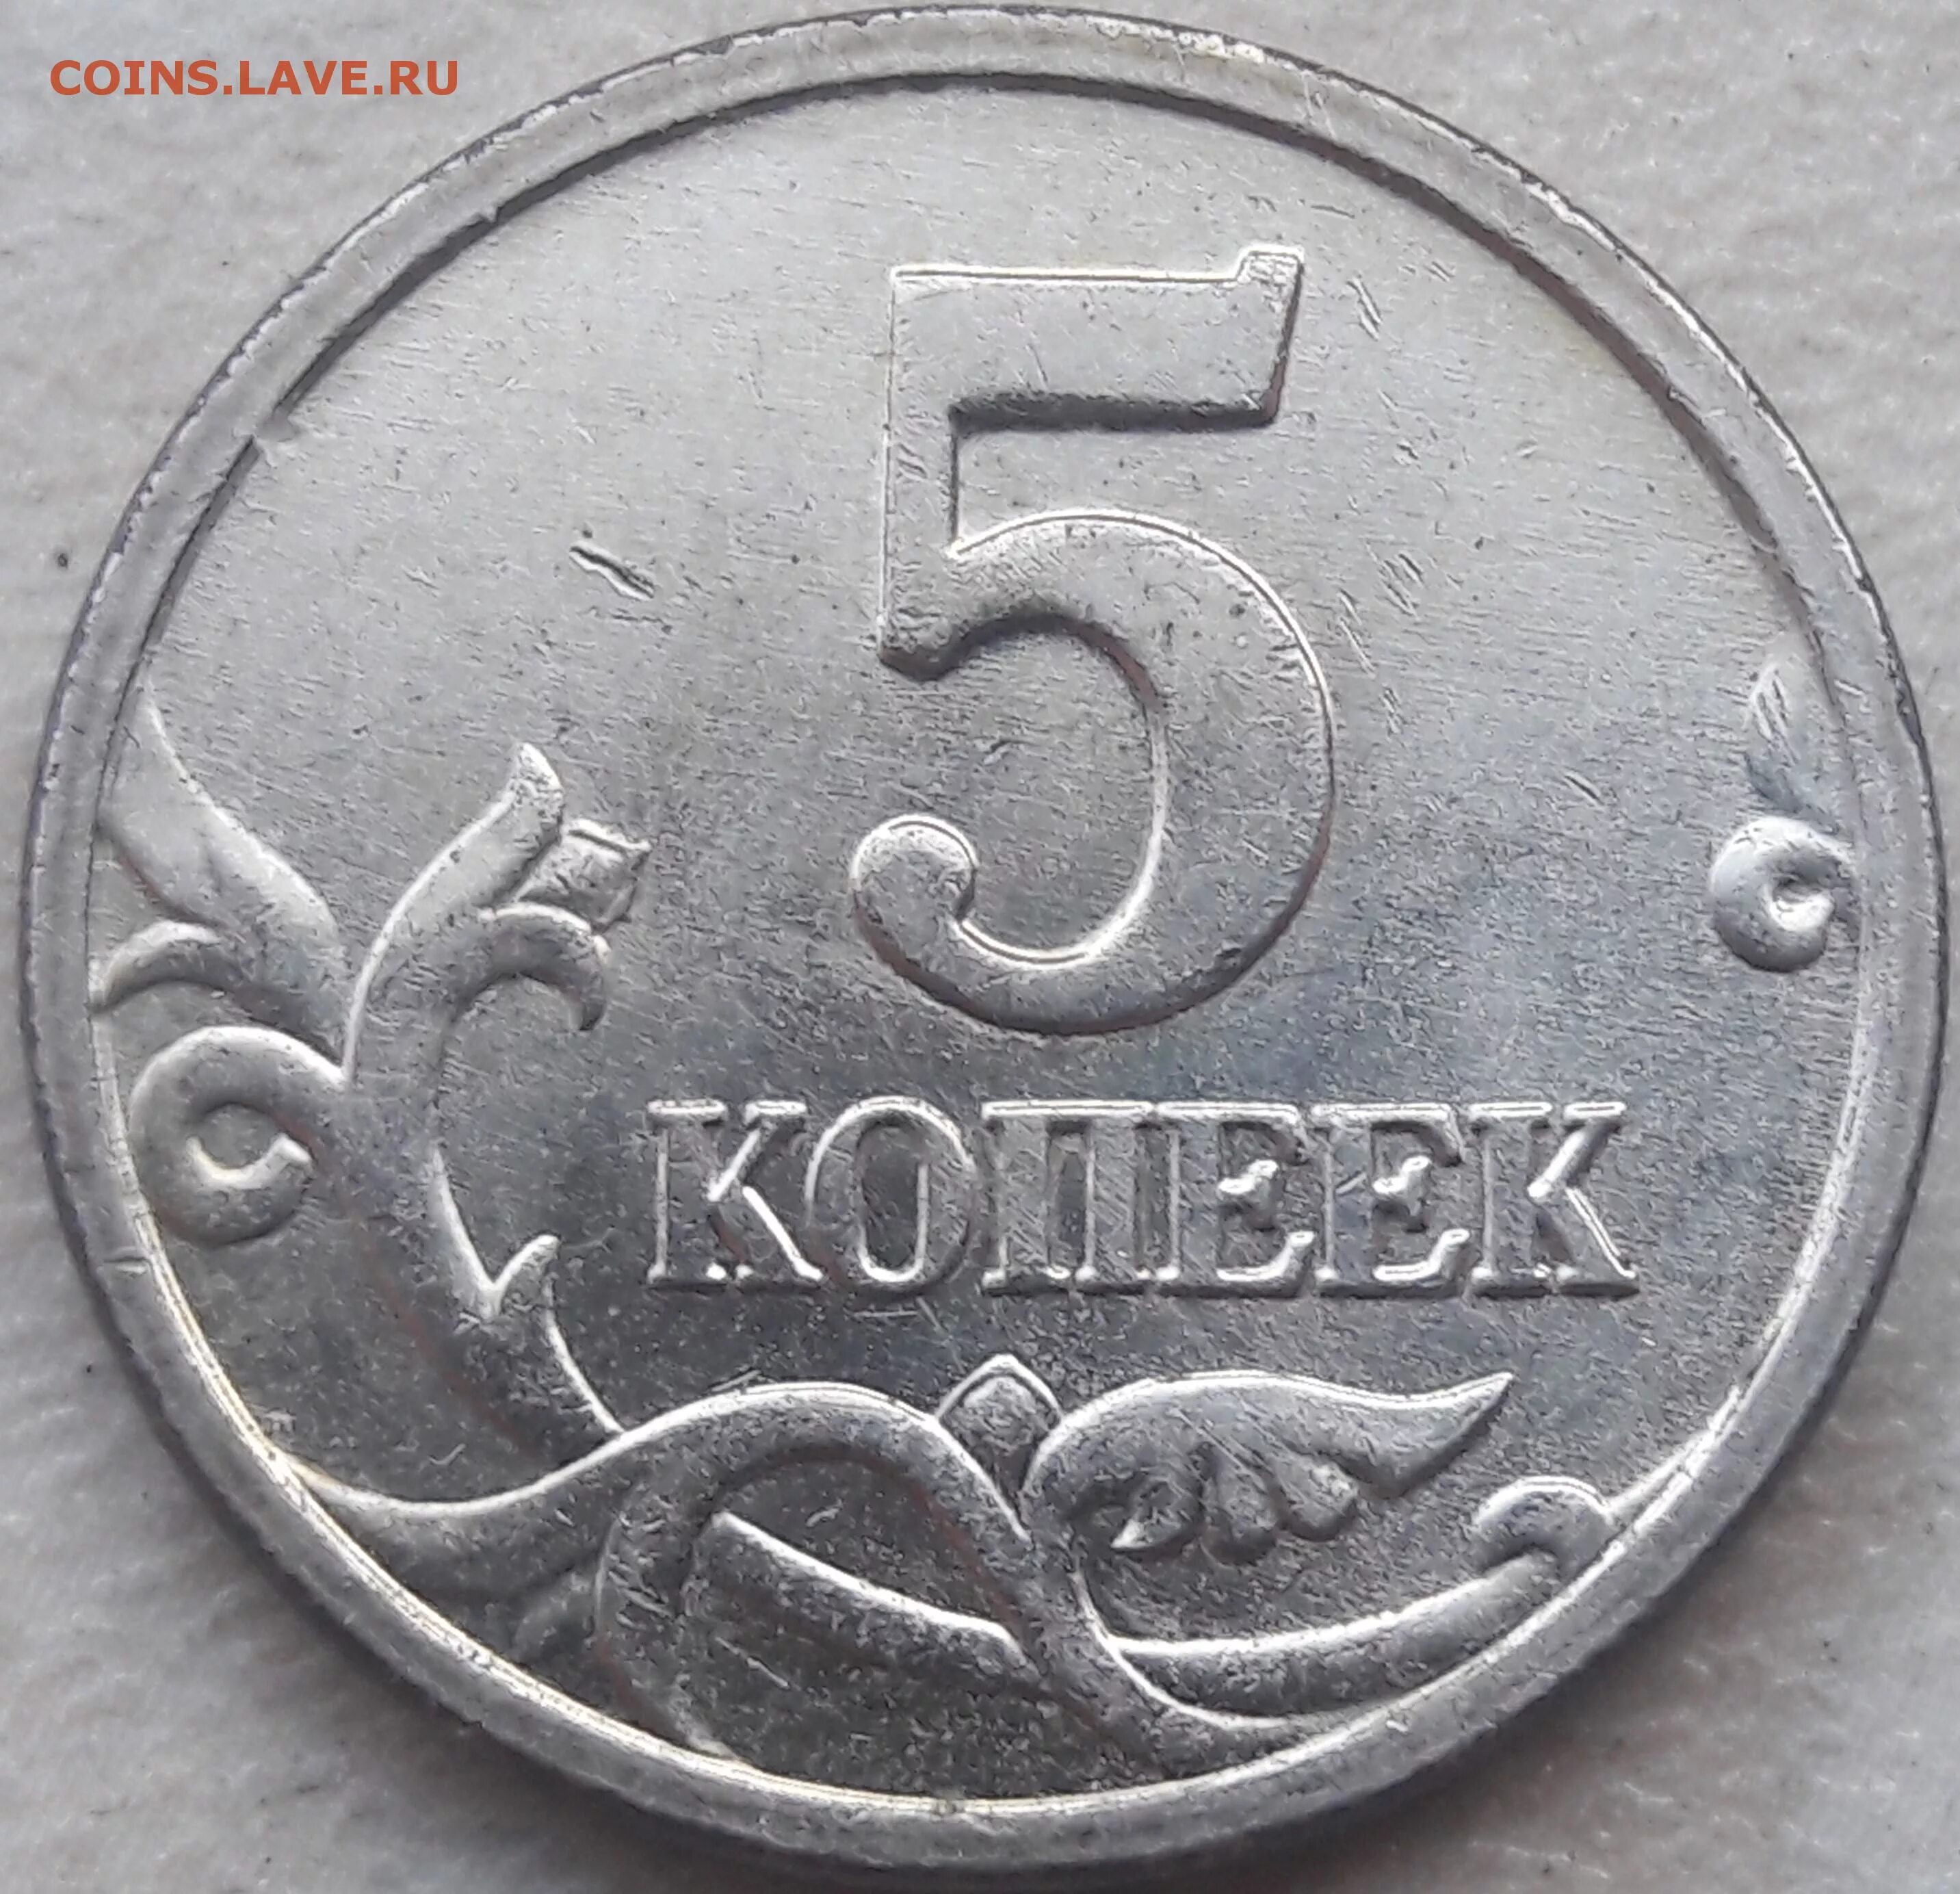 12 рублей 80. 5 Копеек 2005 м. Штемпель 2 3 5 копеек 2003. Пять копеек 90 года м. Белый метал 5копеек 2005г.